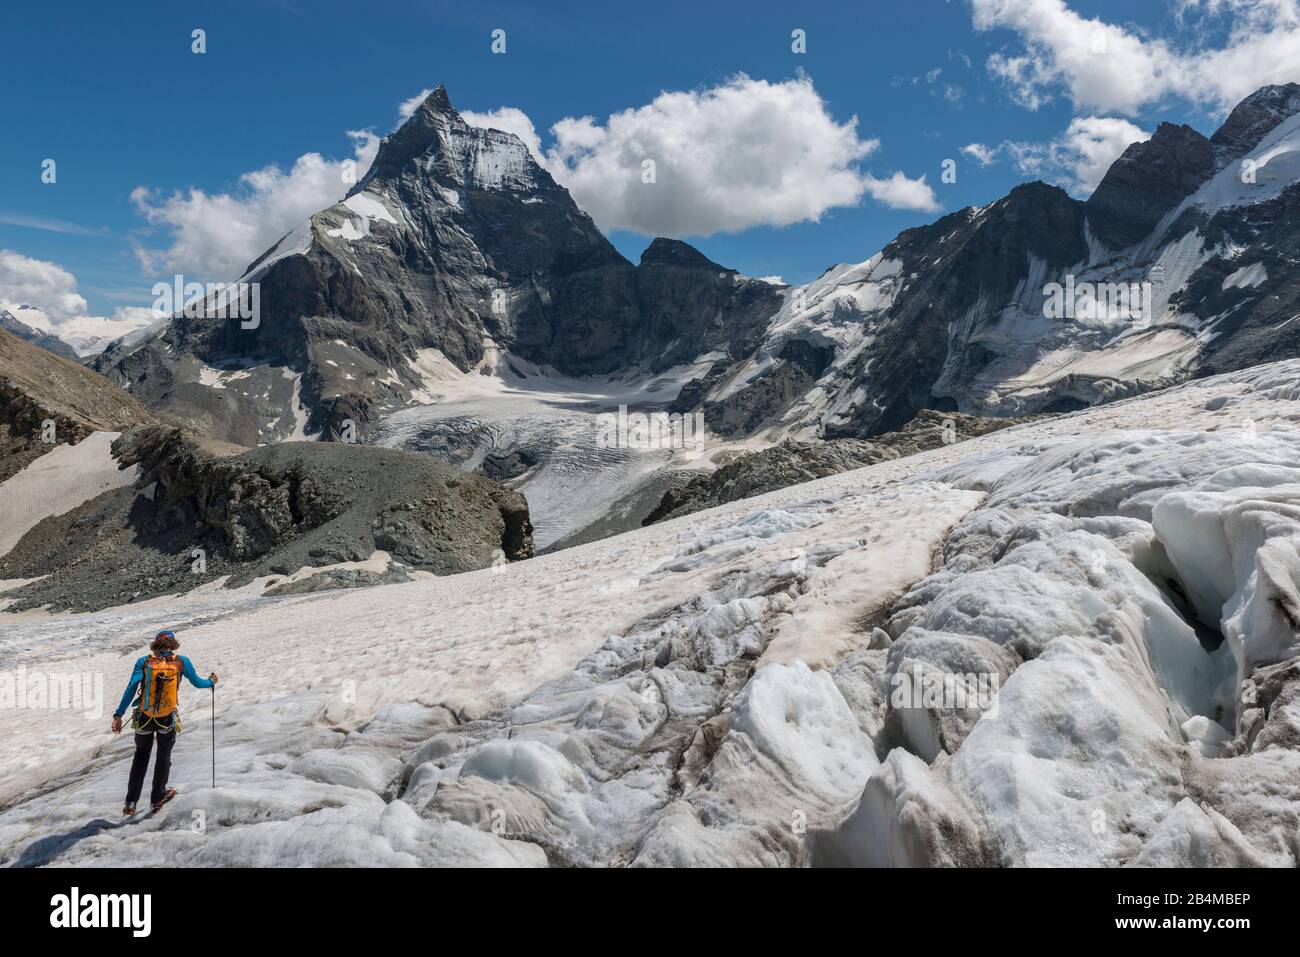 Schweiz, Wallis, Haute Route Chamonix Zermatt, Bergsteiger bei der Überquerung des Stockjigletscher mit Matterhorn - Zmuttgrat, Westwand und Liongrat Stock Photo